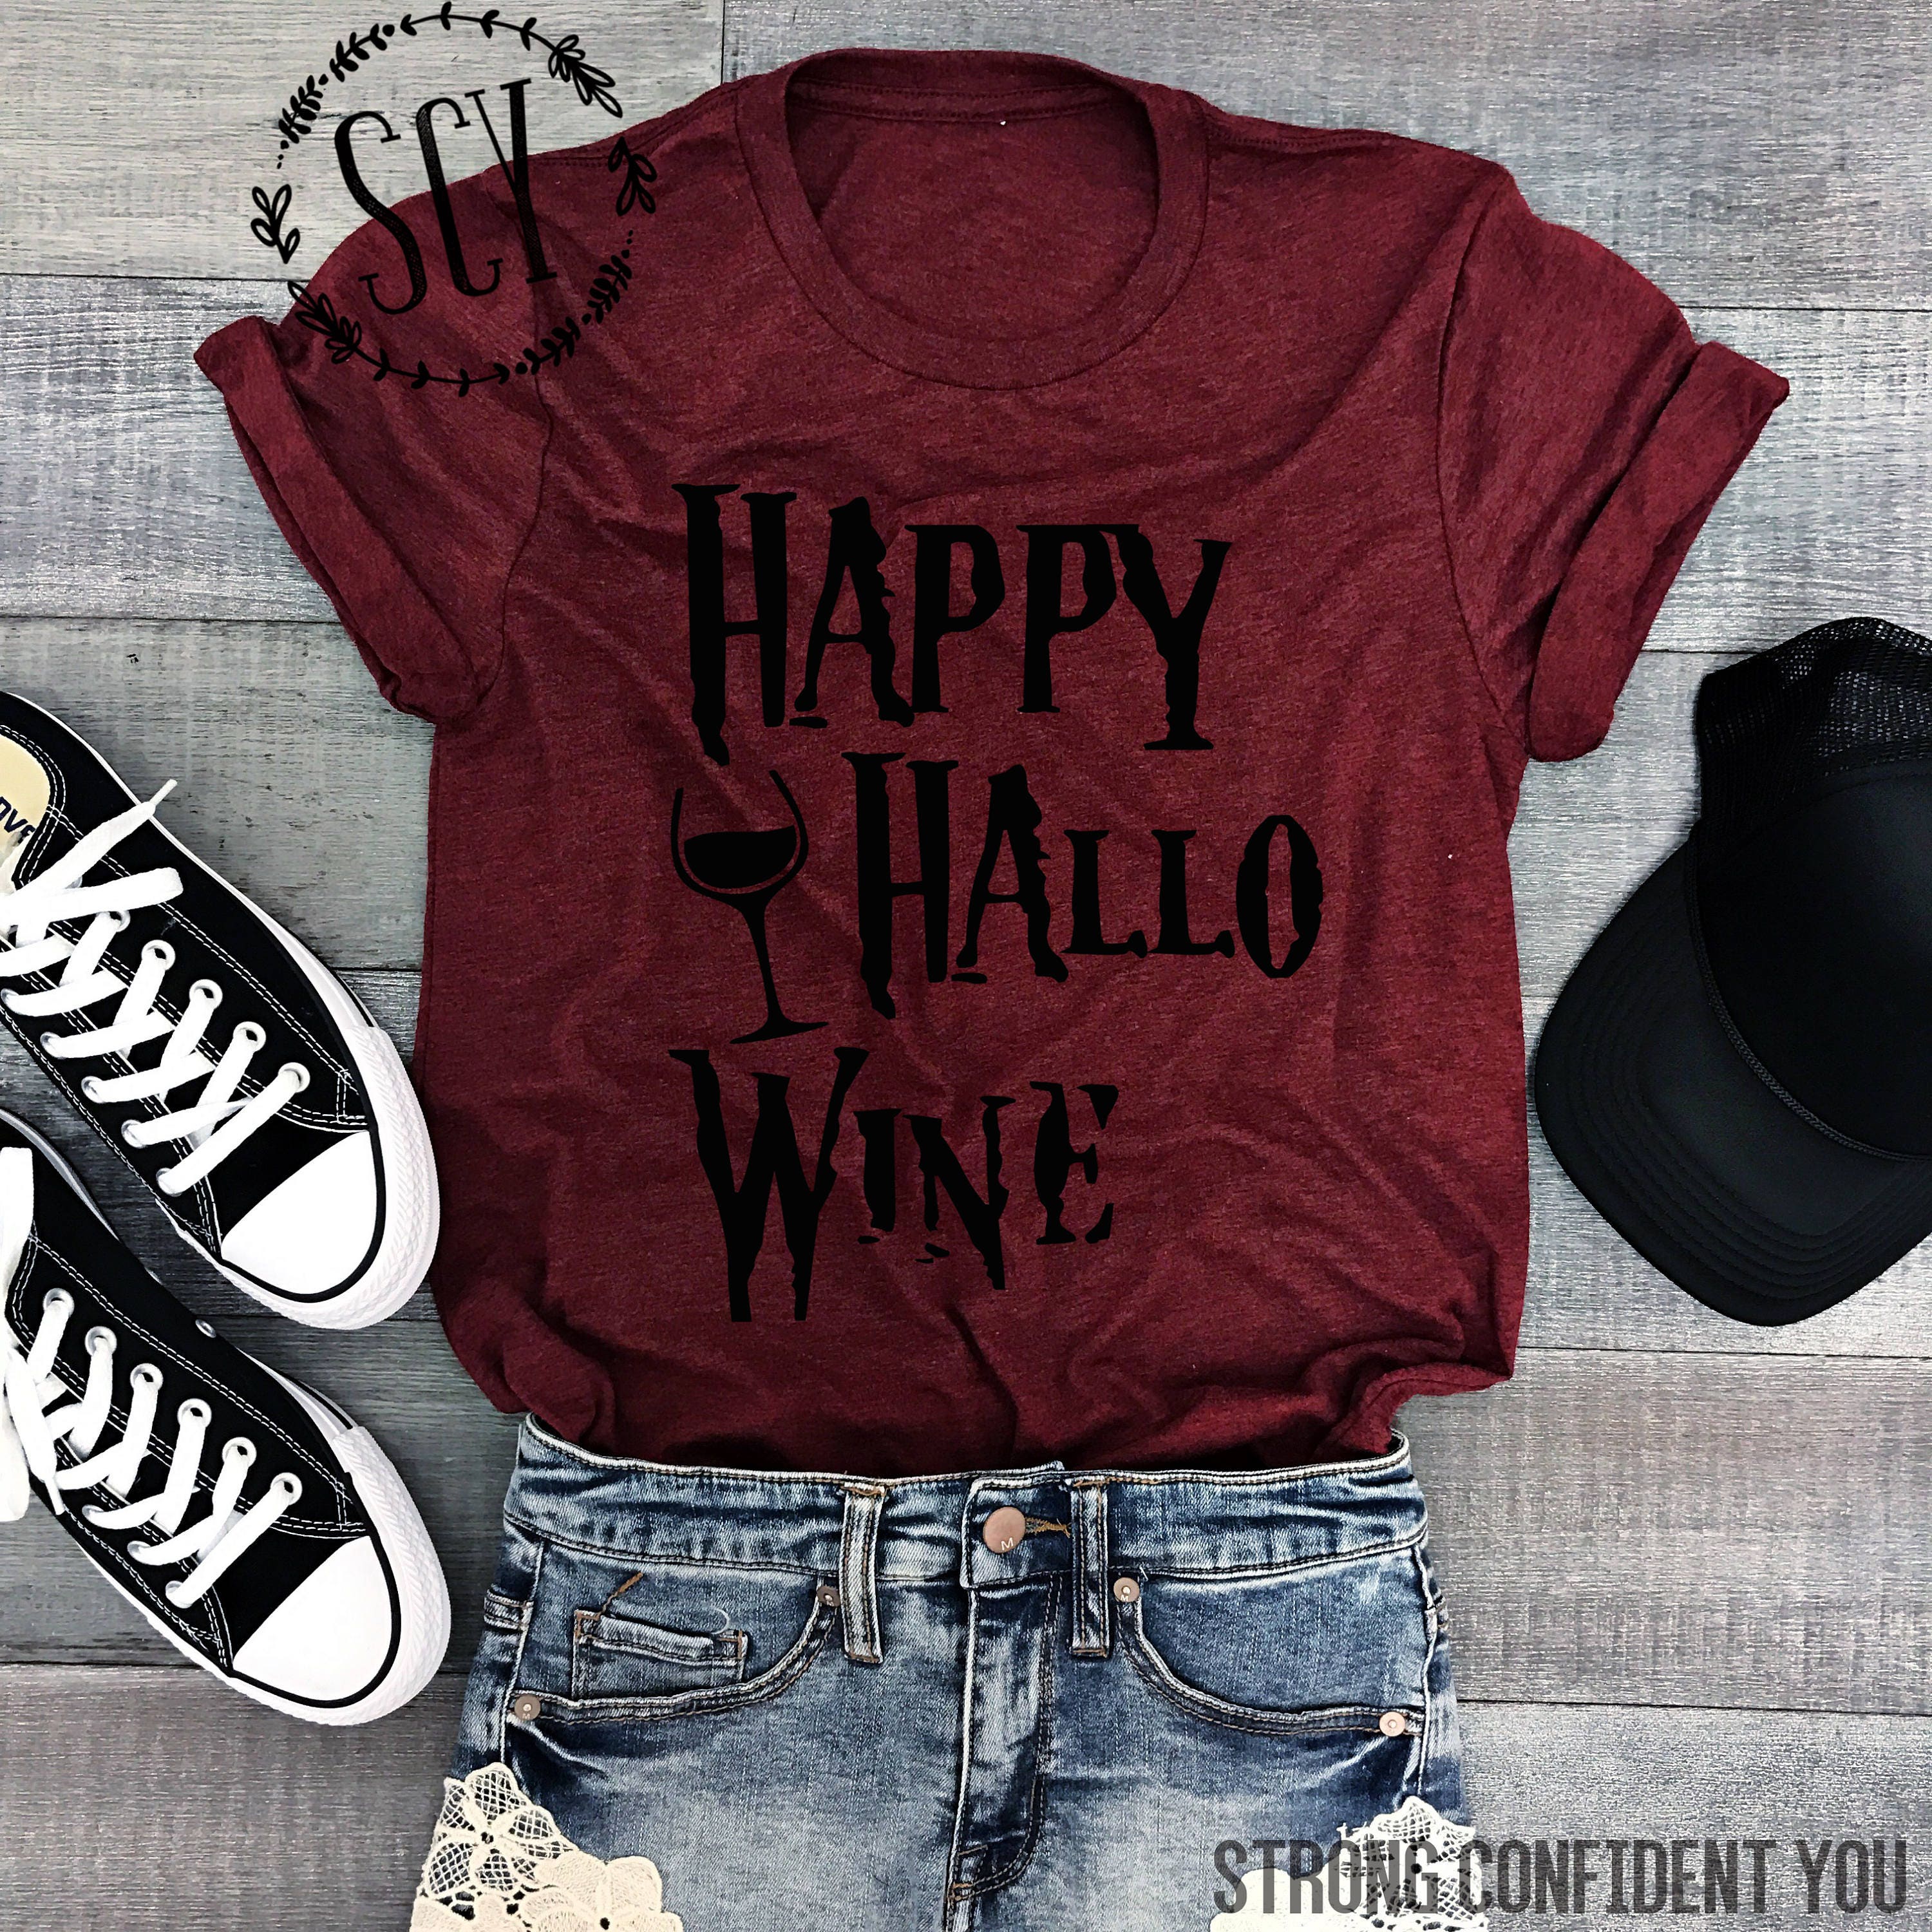 Happy Hallo Wine Tee Shirt - Burgundy Wine Shirt - Triblend Halloween Tee Shirt - Funny Halloween Tee - Unisex Halloween Shirt